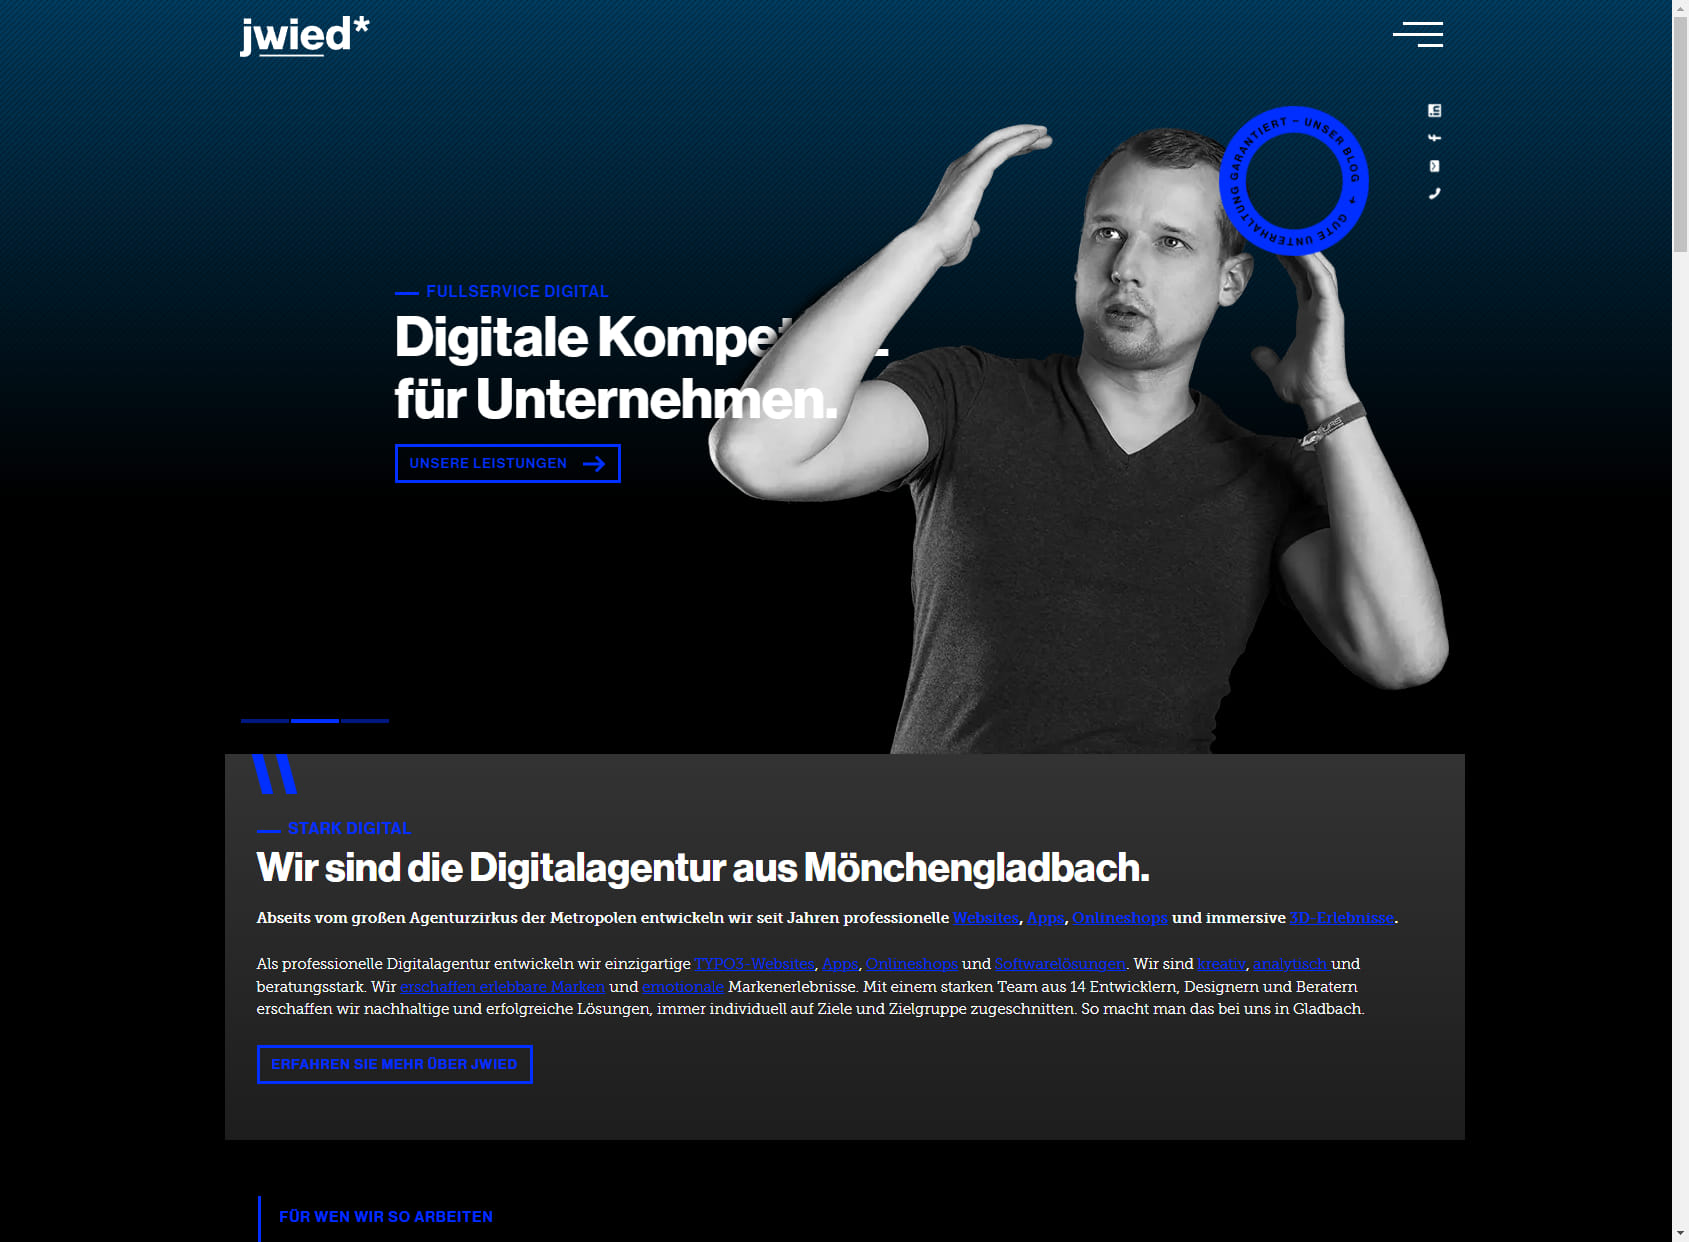 jwied* Digitalagentur